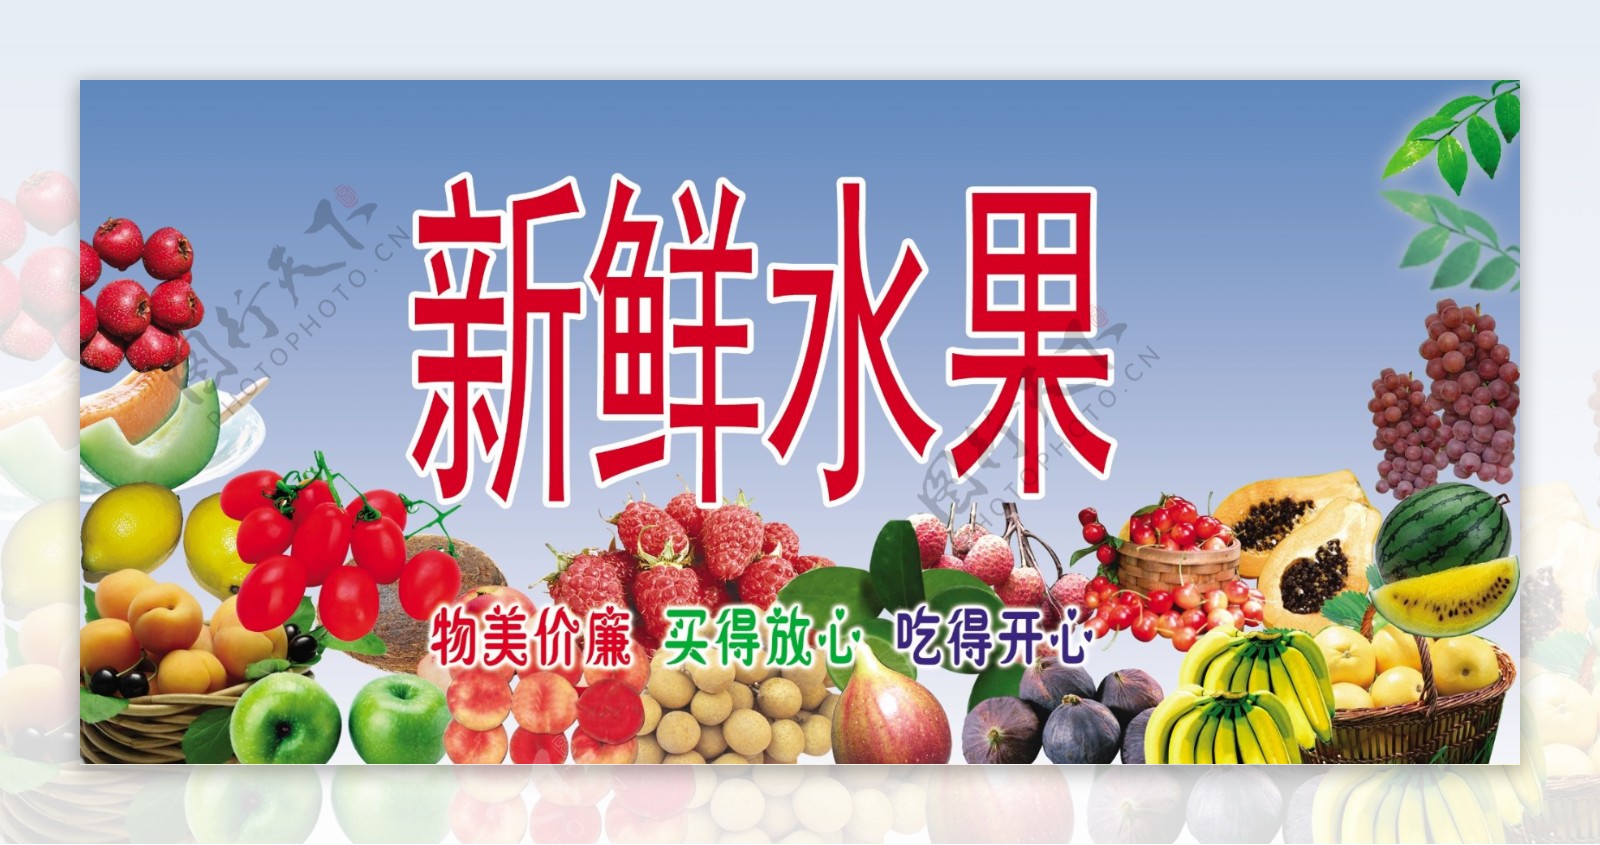 水果店广告